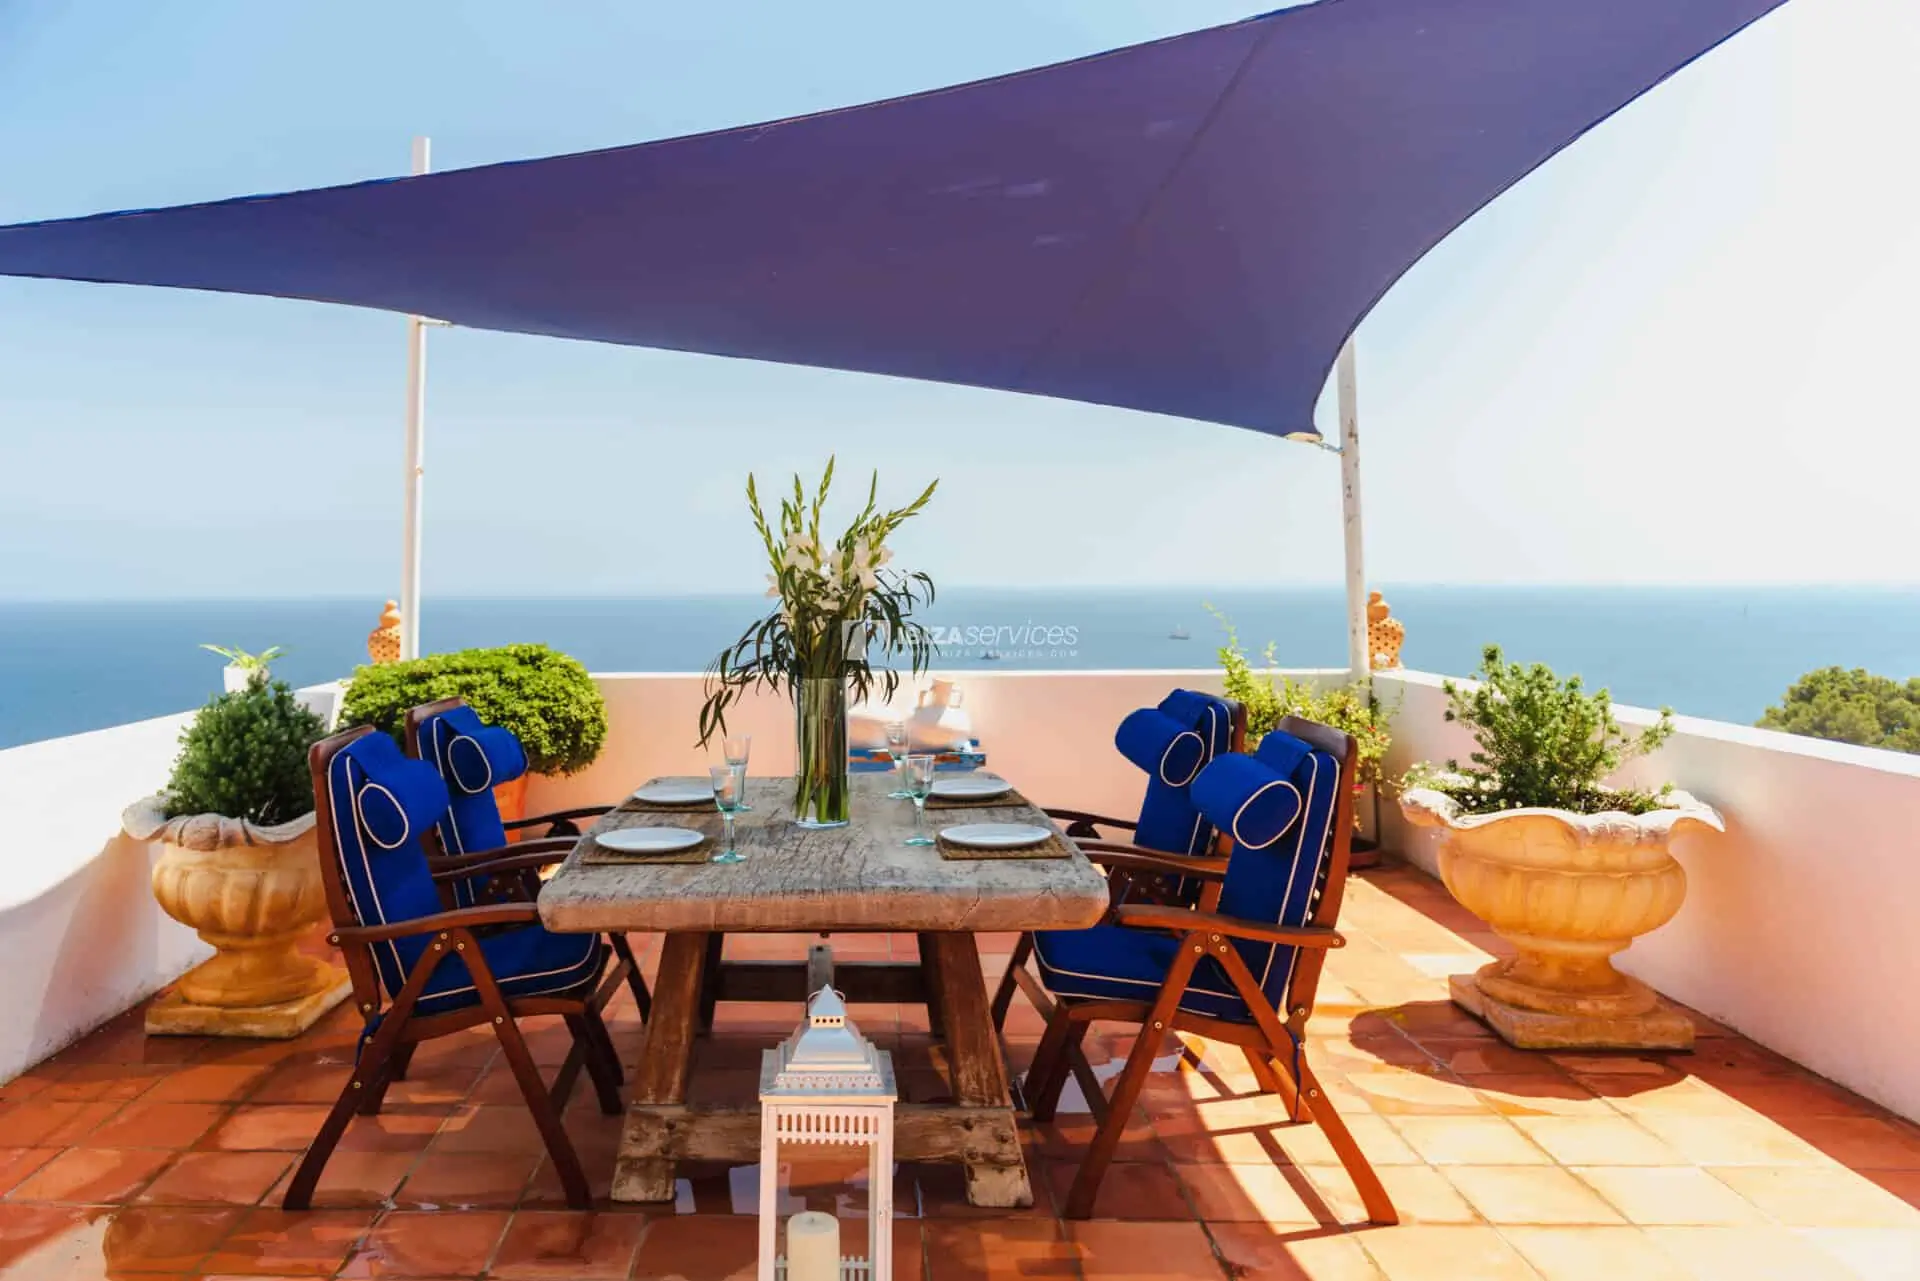 Roca llisa villa de vacance de 5 chambres avec superbe vue mer